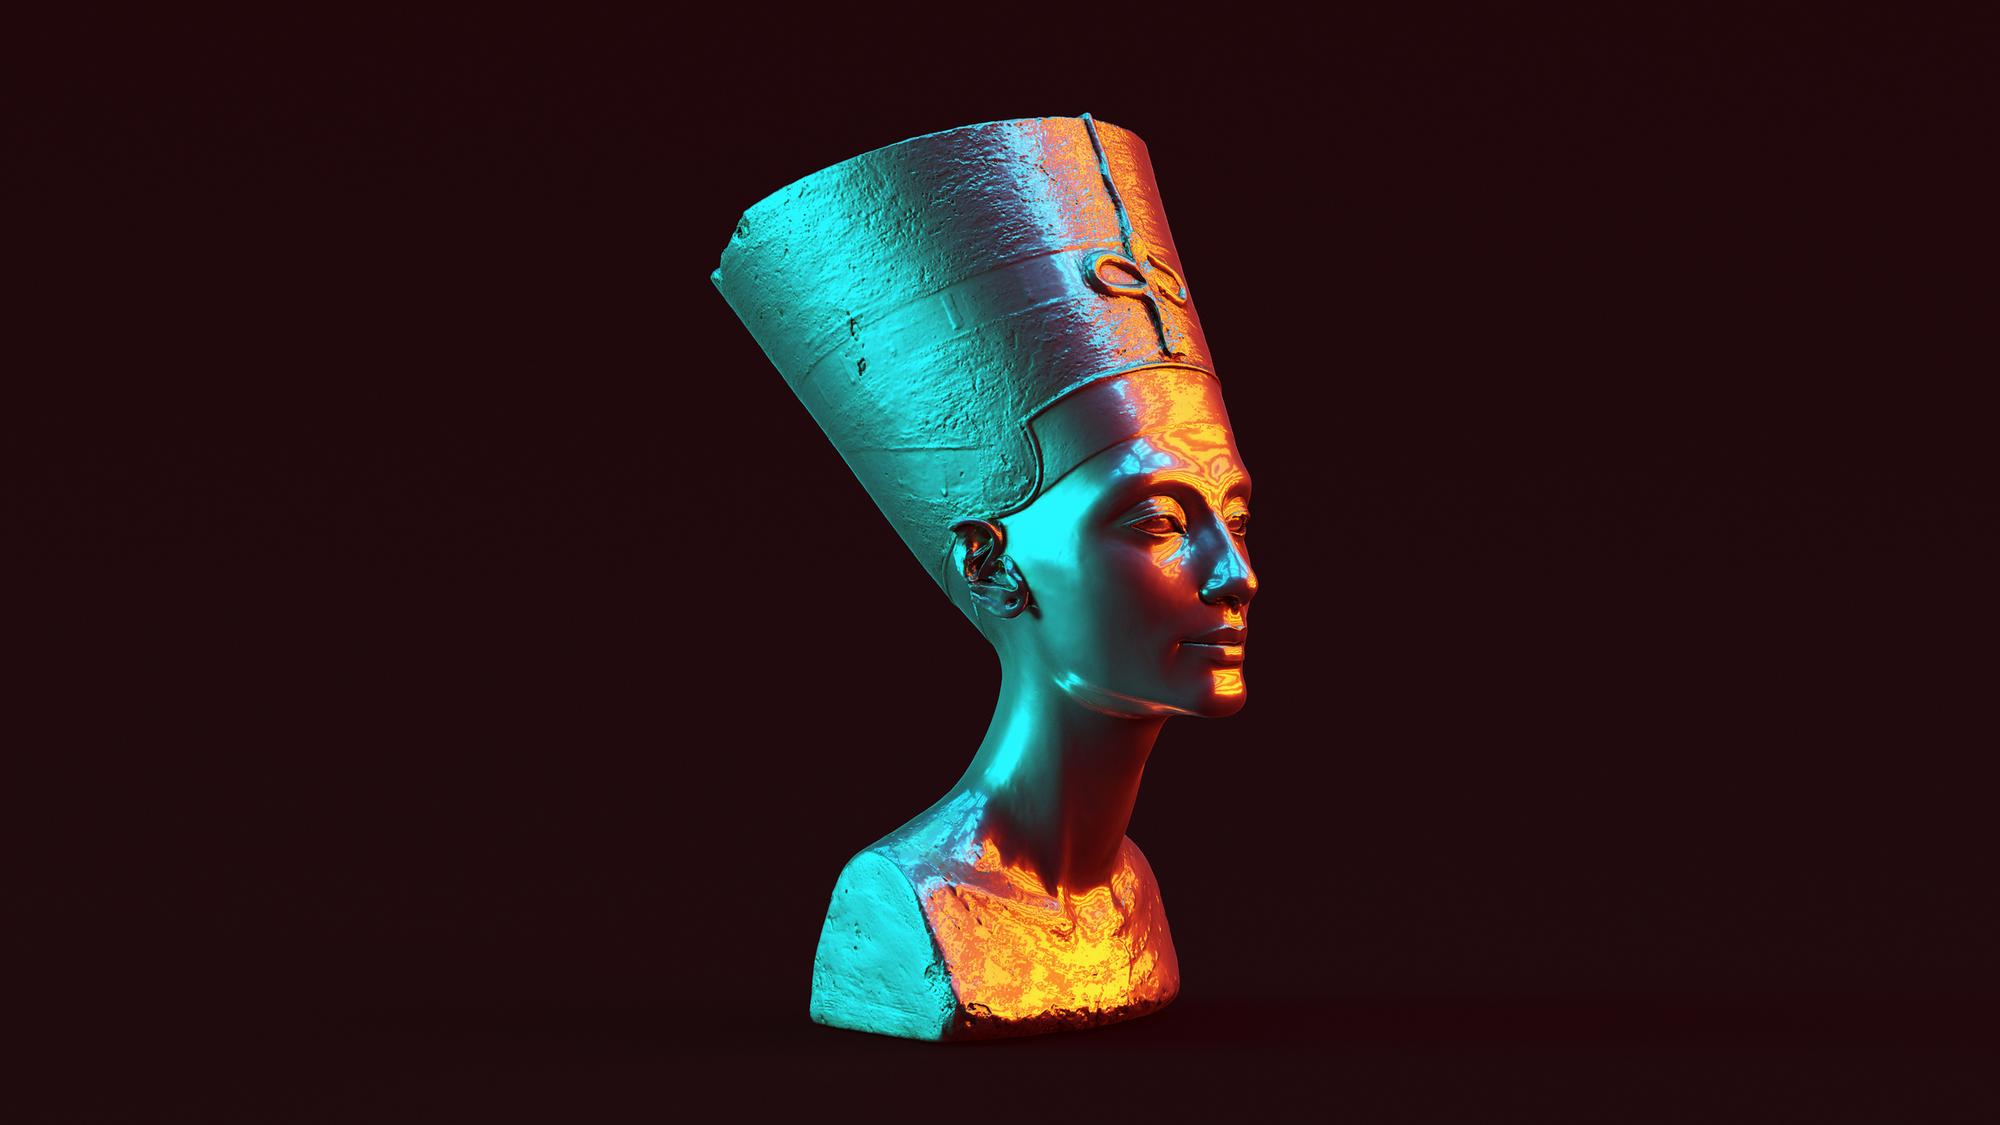 Prečo neexistuje toľko informácií o Nefertiti?